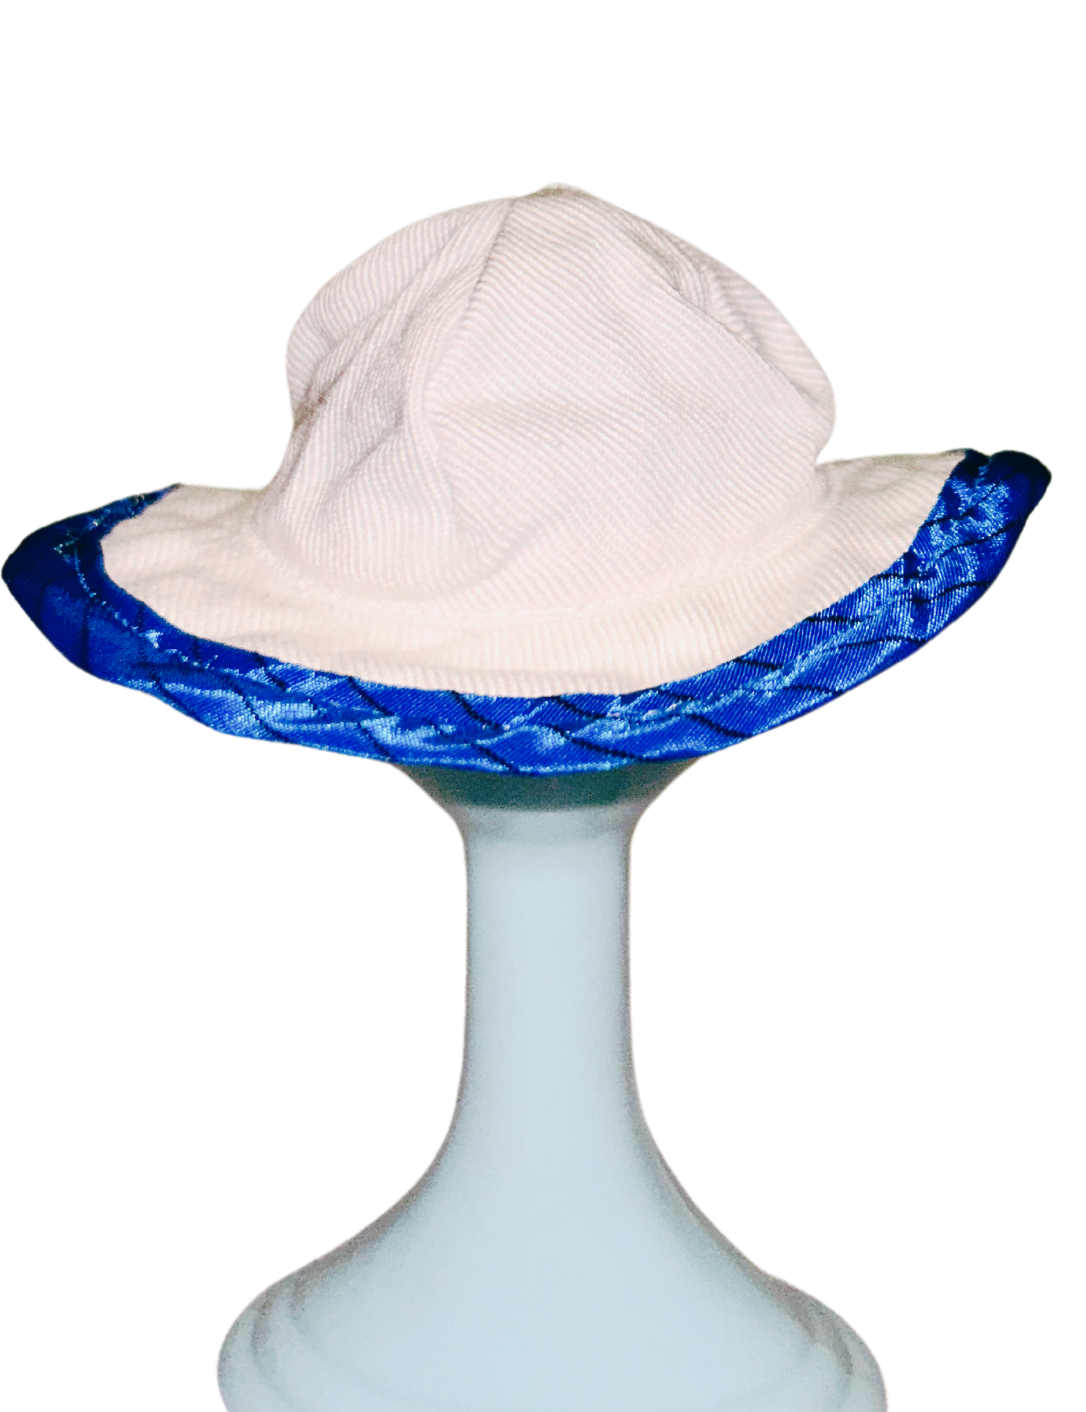 1984 Pedigree Sindy Fashion Doll Smart Set Hat